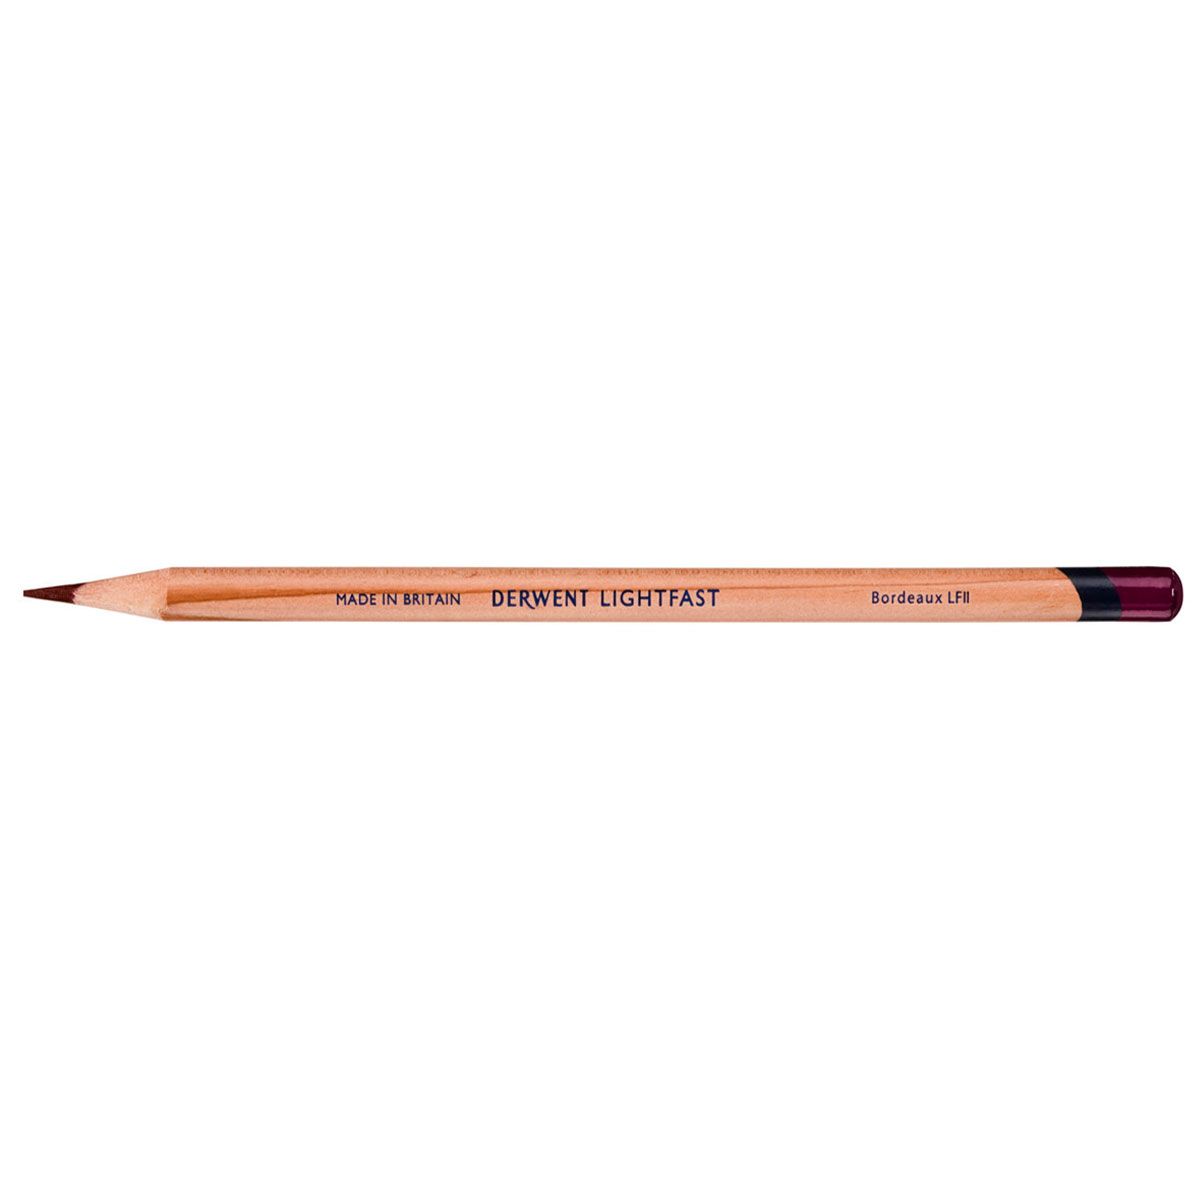 NEW Derwent Lightfast Pencil Colour: Bordeaux